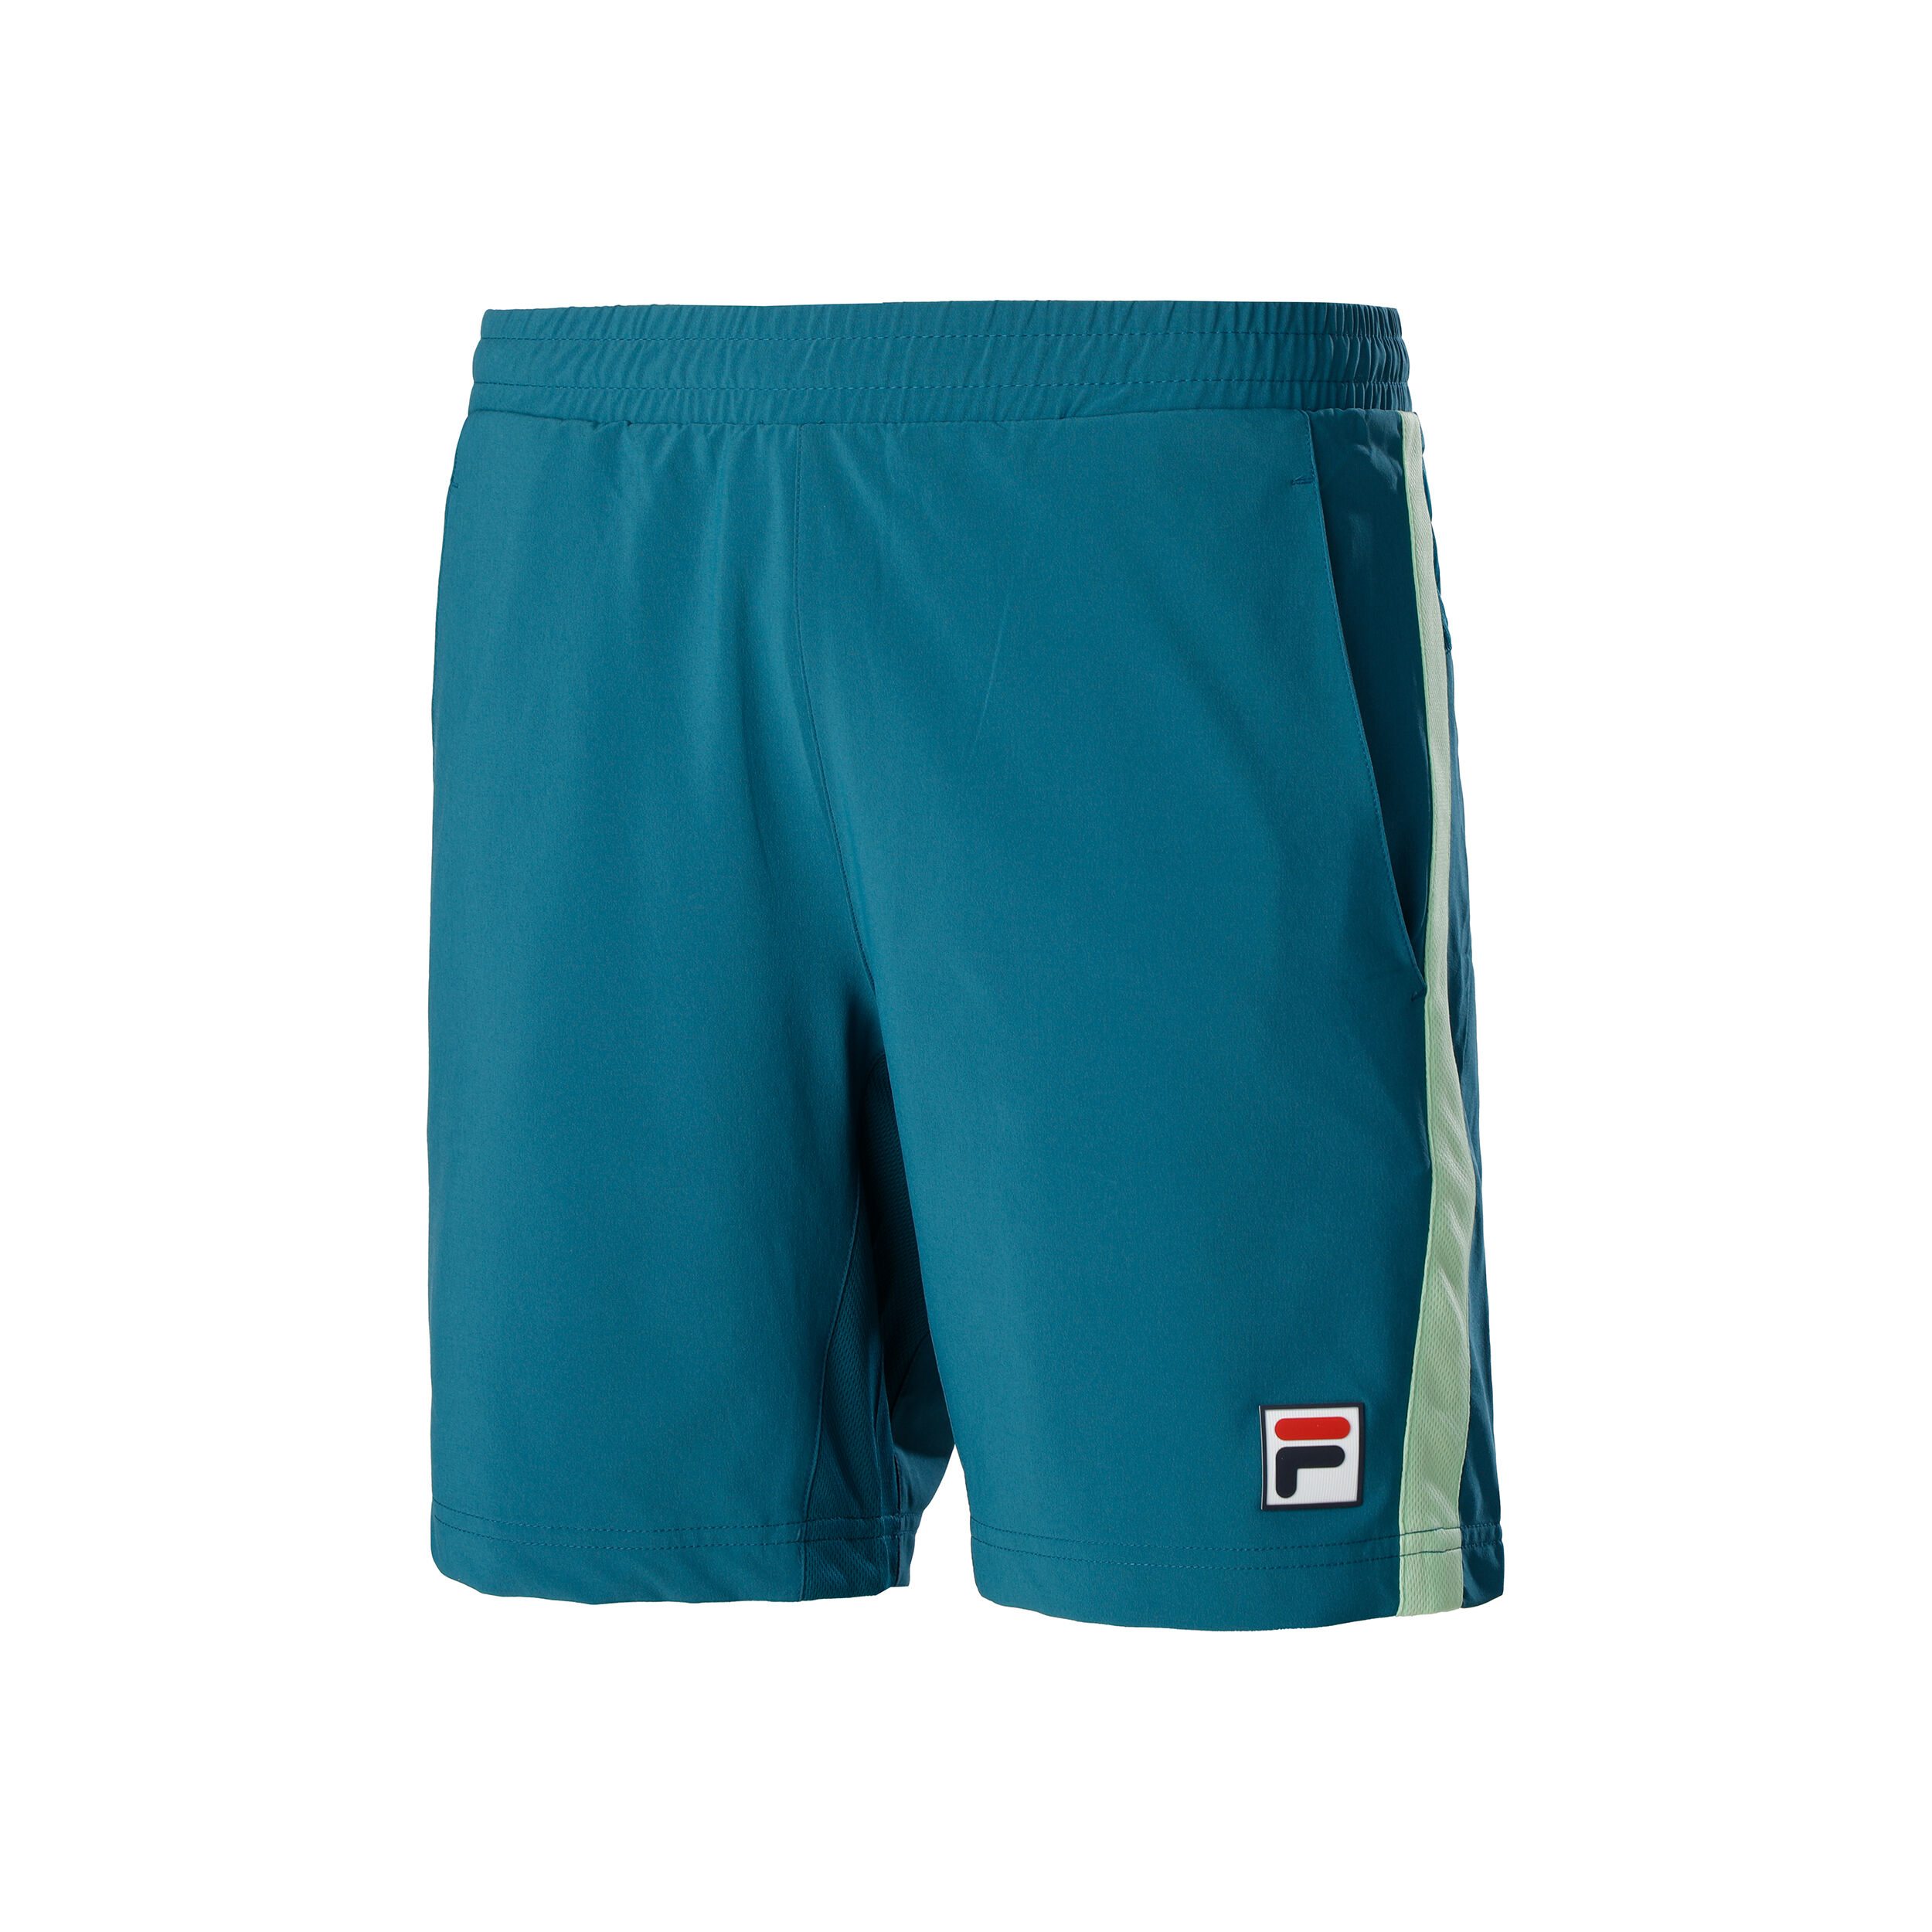 BISAG Shorts Fila pour homme en coloris Bleu Homme Vêtements Articles de sport et dentraînement Shorts de sport 